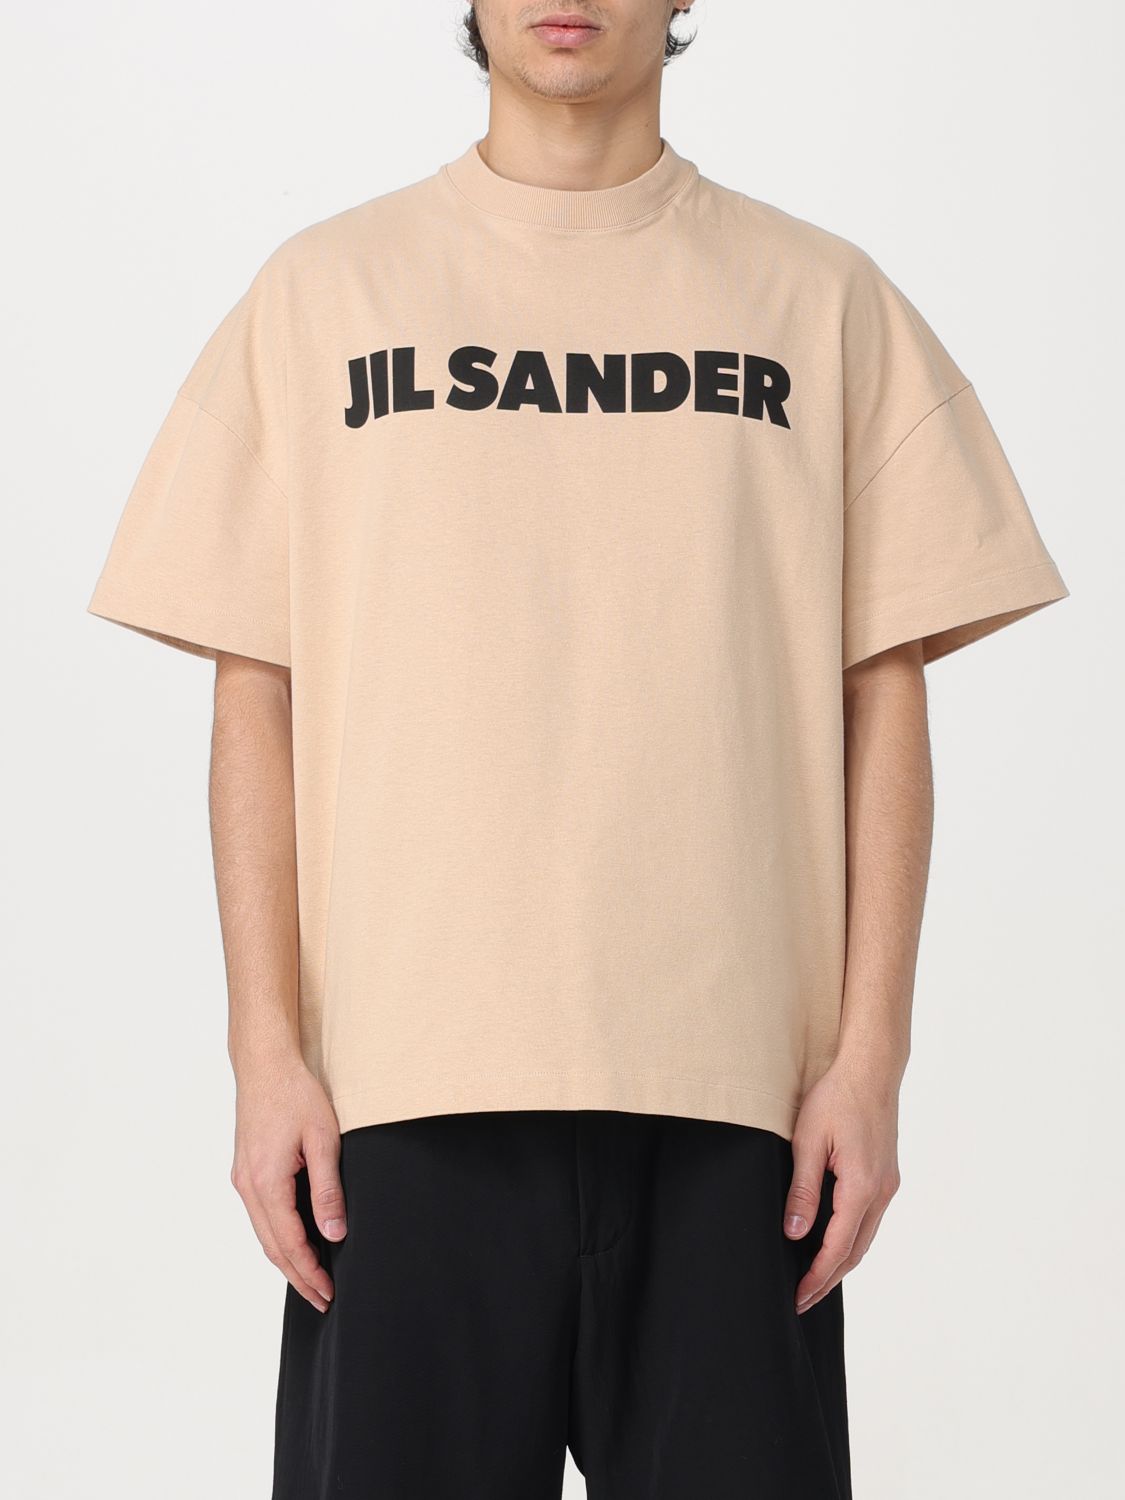 Jil Sander T-shirt  Men Color Sand